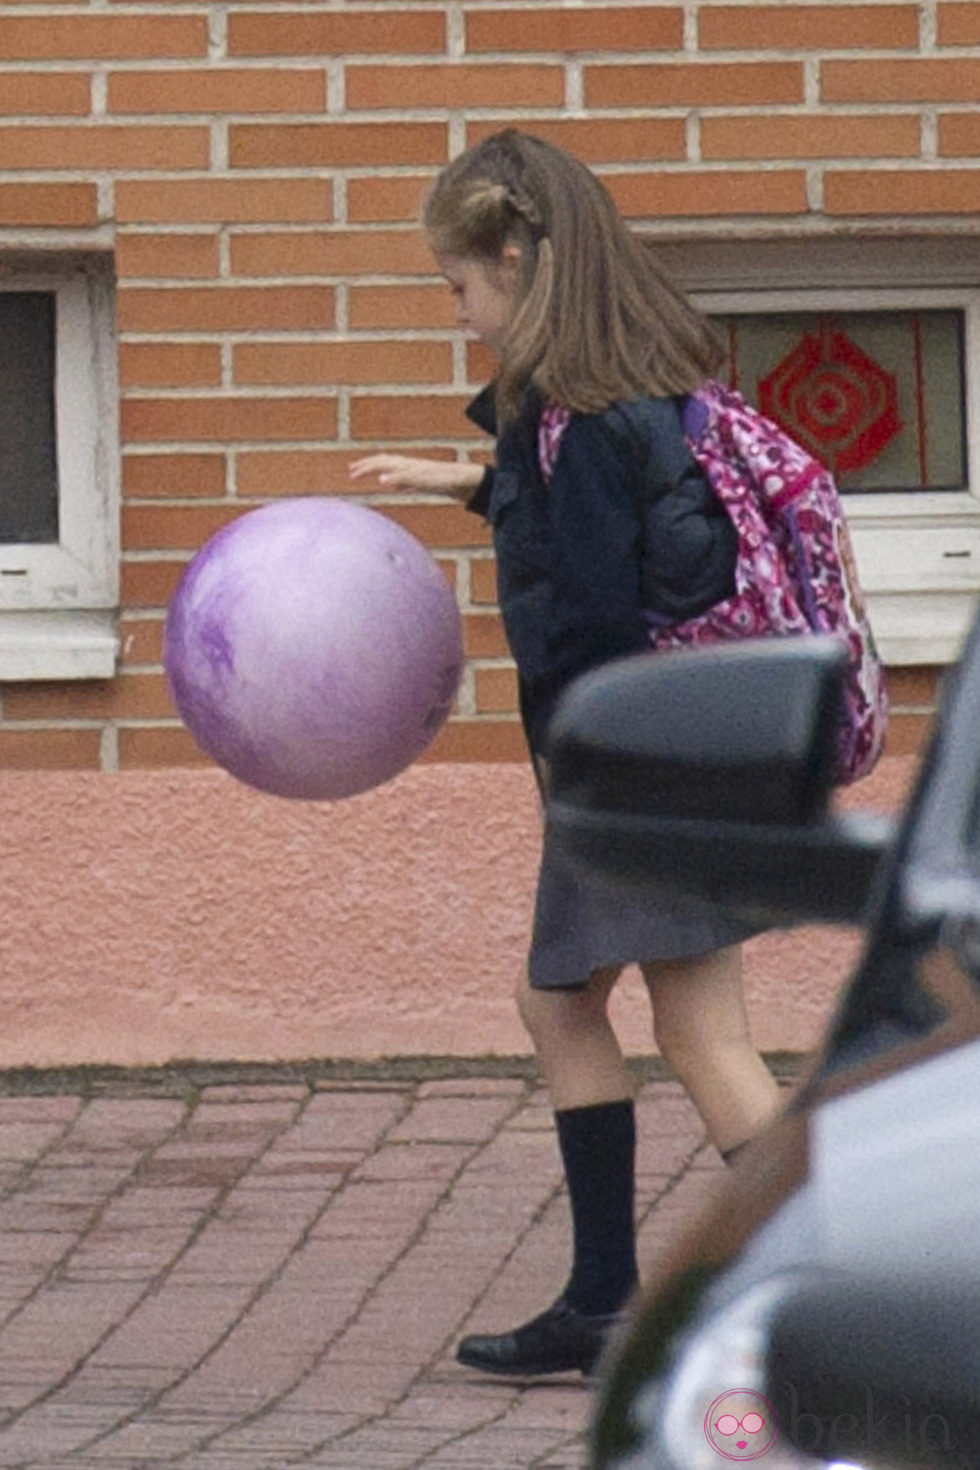 La Infanta Leonor juega con una pelota antes de entrar al colegio